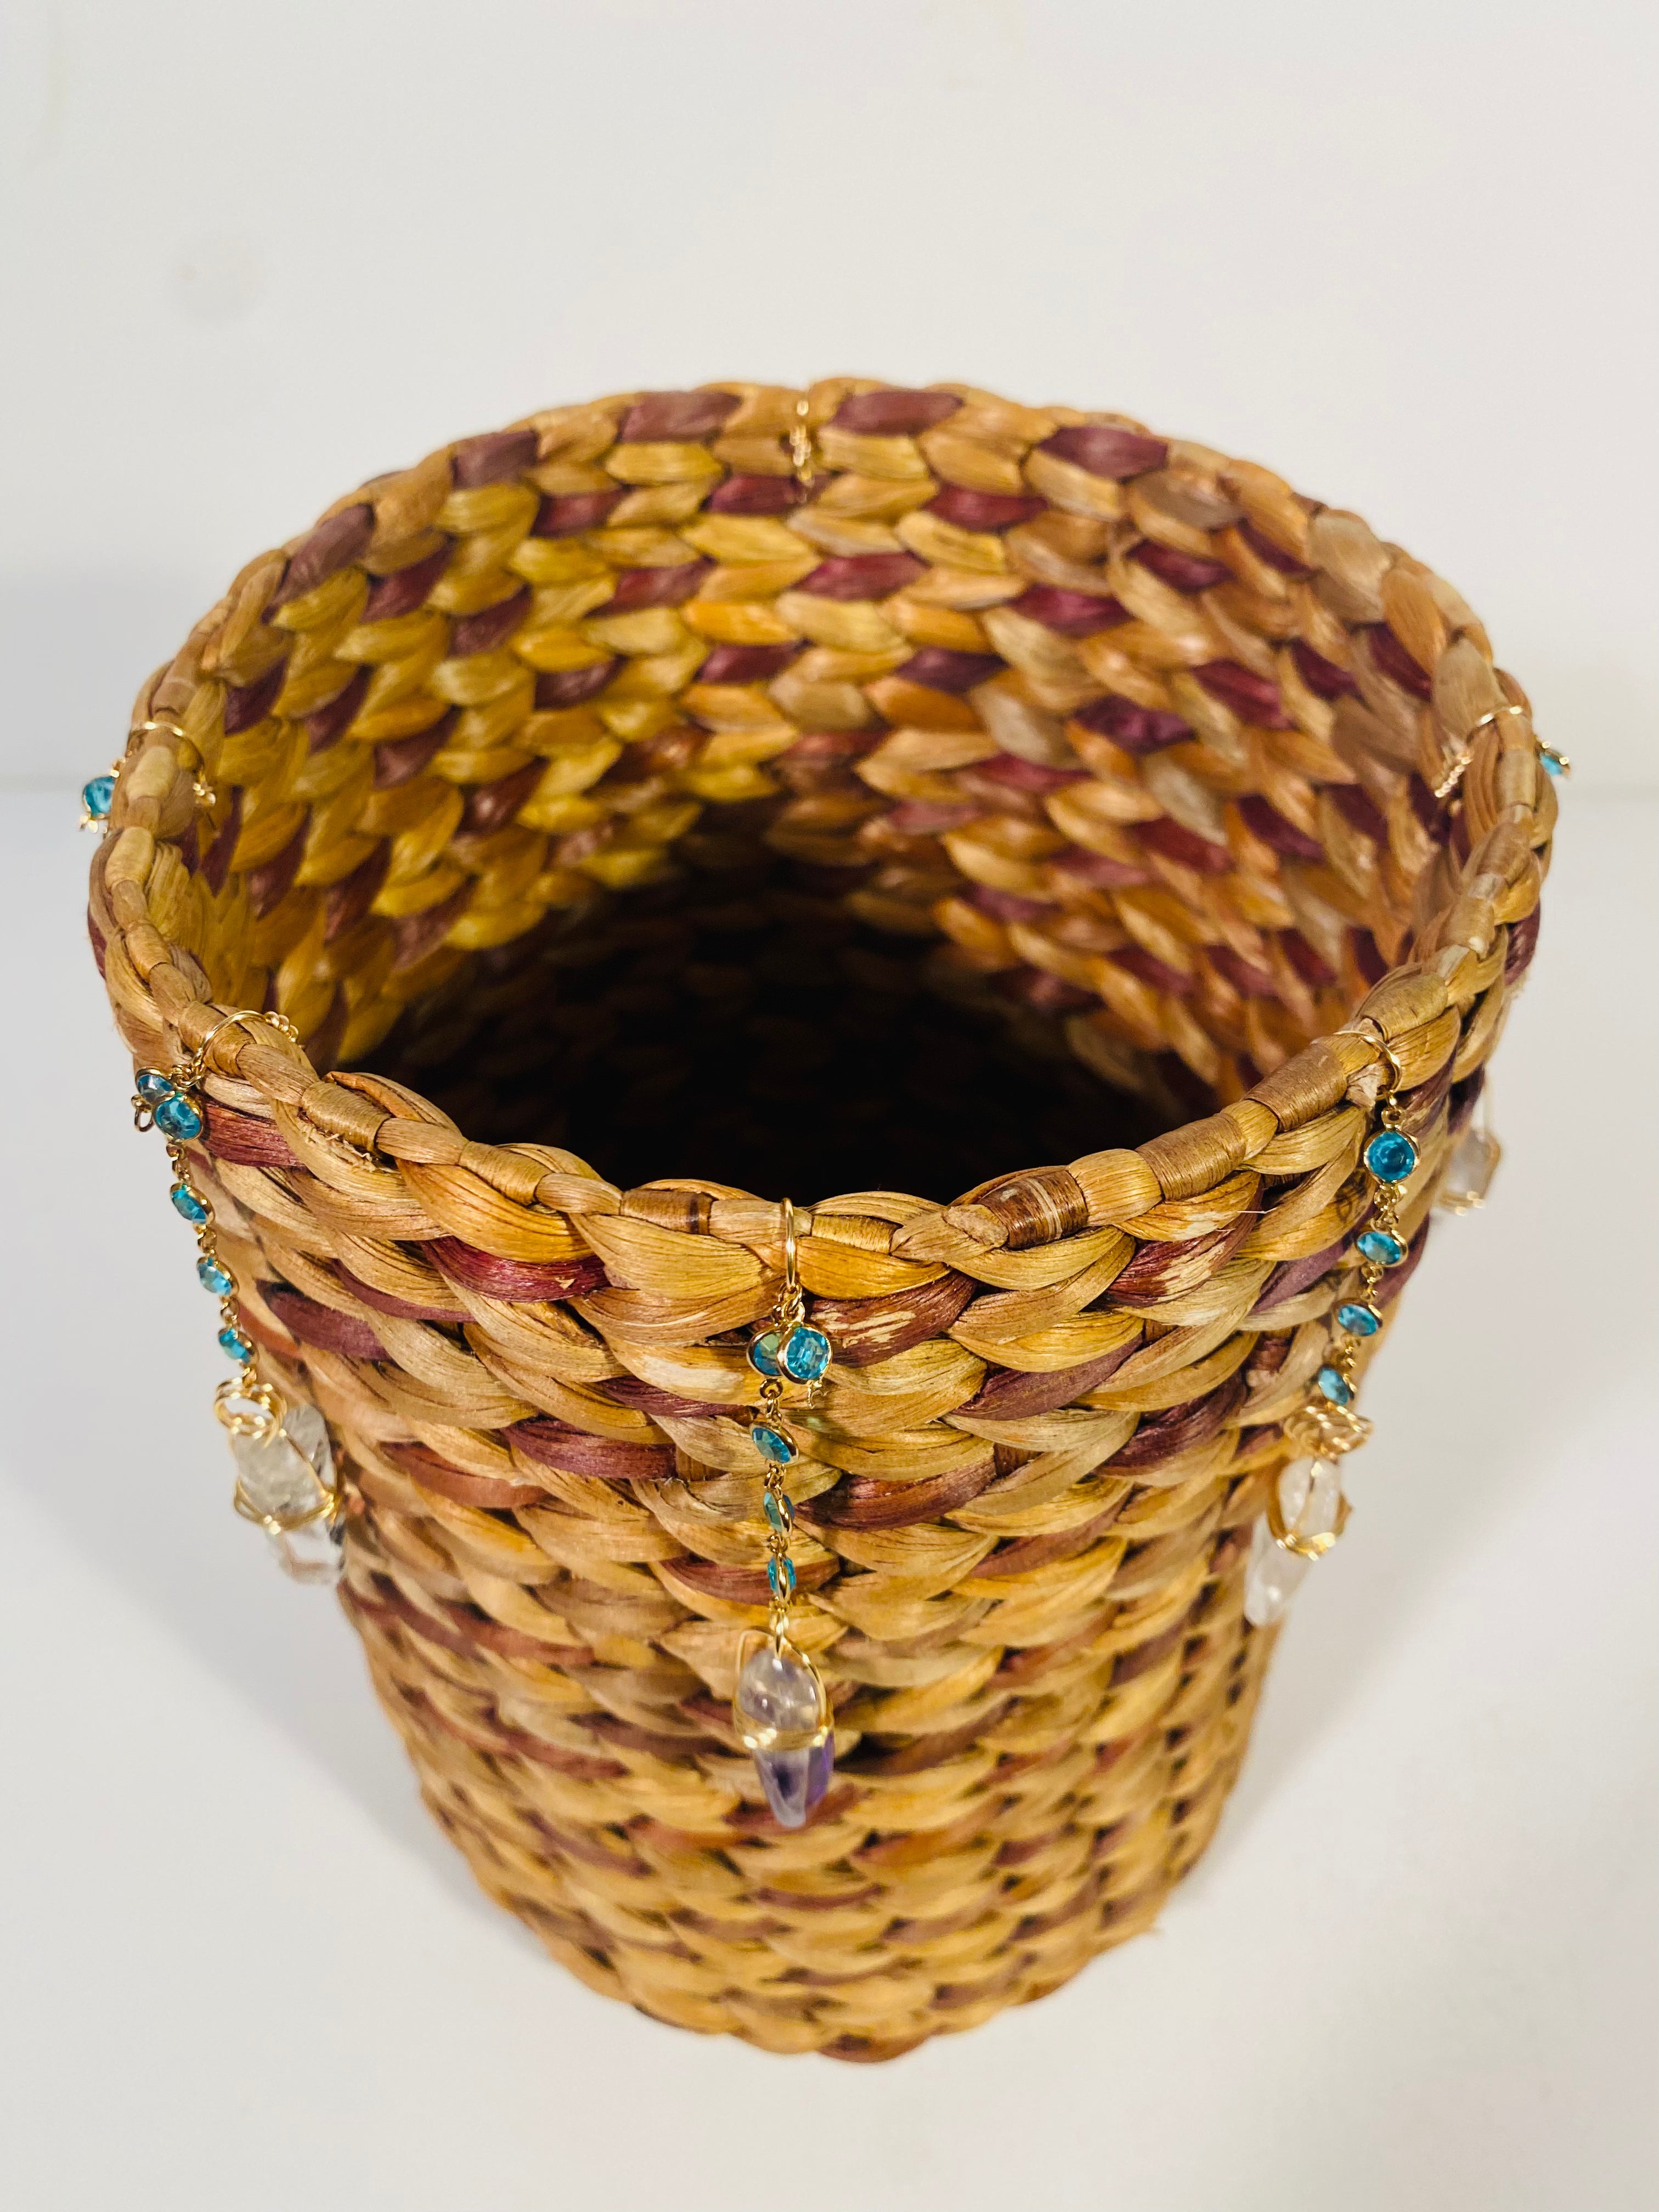 Crystal Embellished Wicker Basket